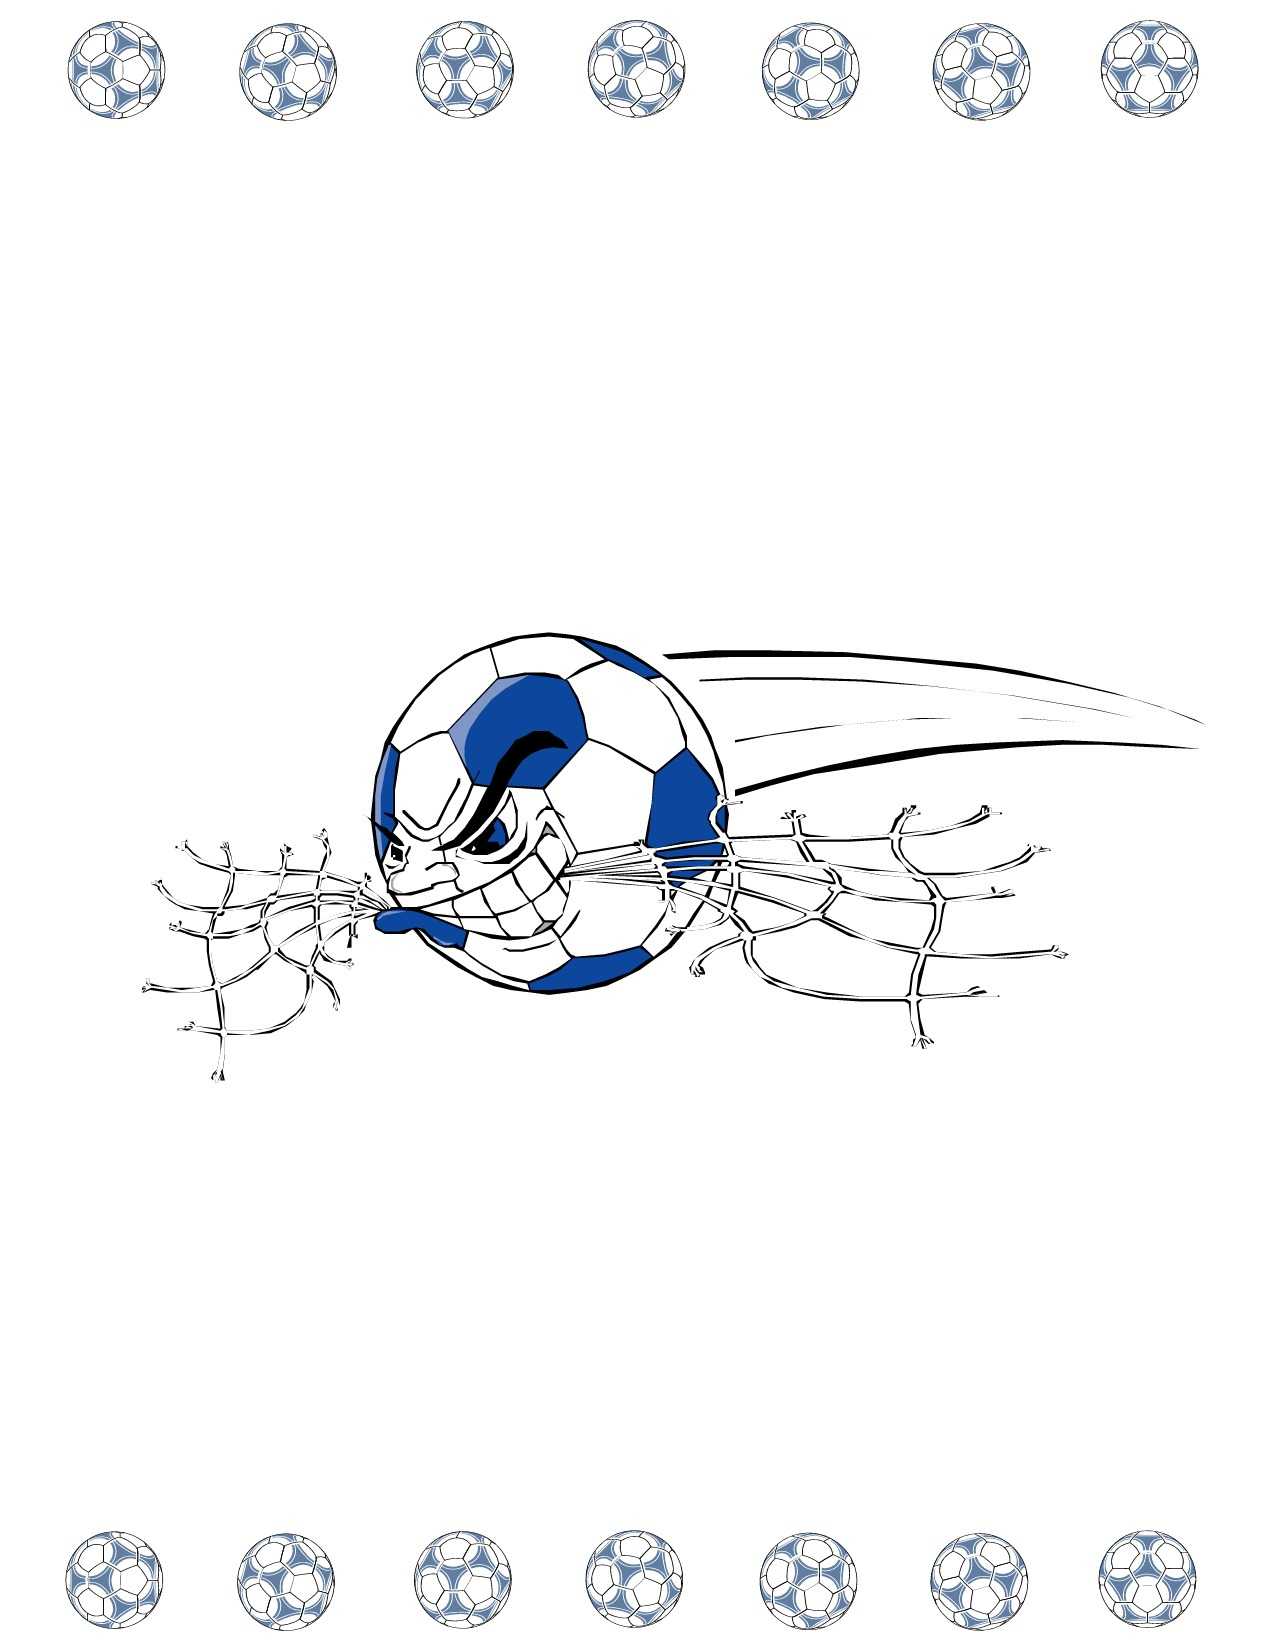 Soccer Award Certificate Maker: Make Personalized Soccer Awards In Soccer Certificate Template